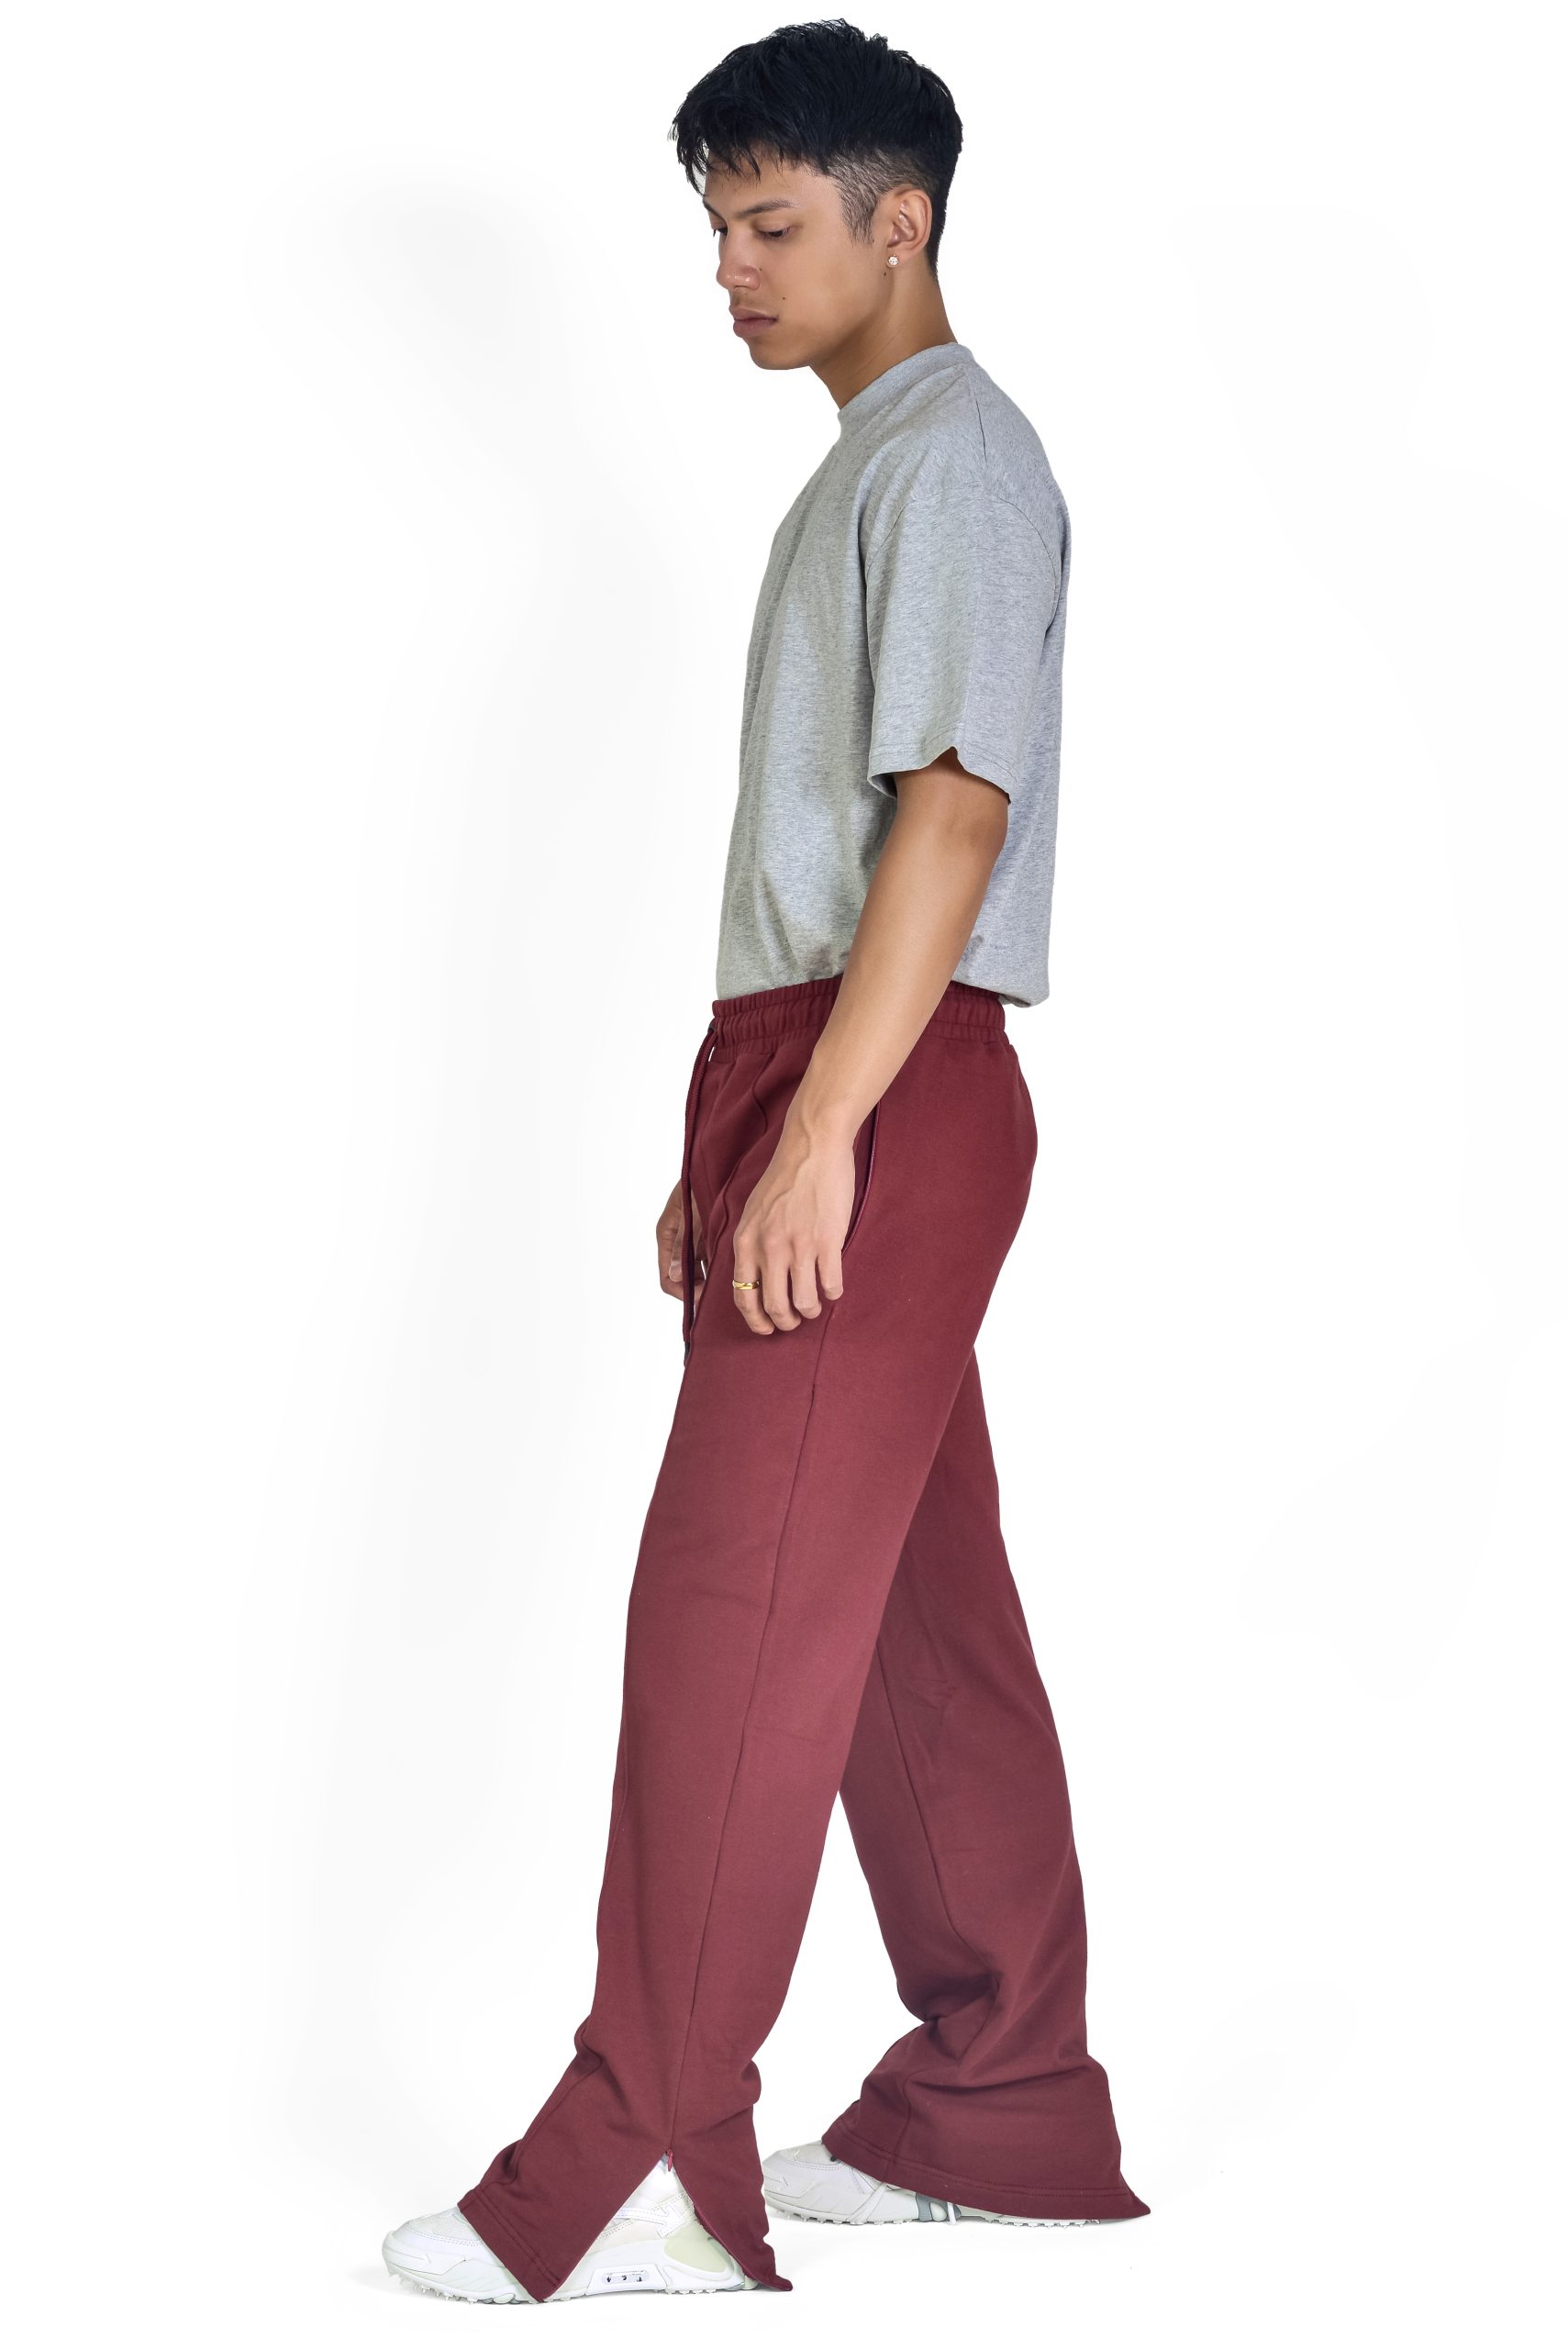 Wide Leg Slit Trousers in Maroon, full-body side profile.